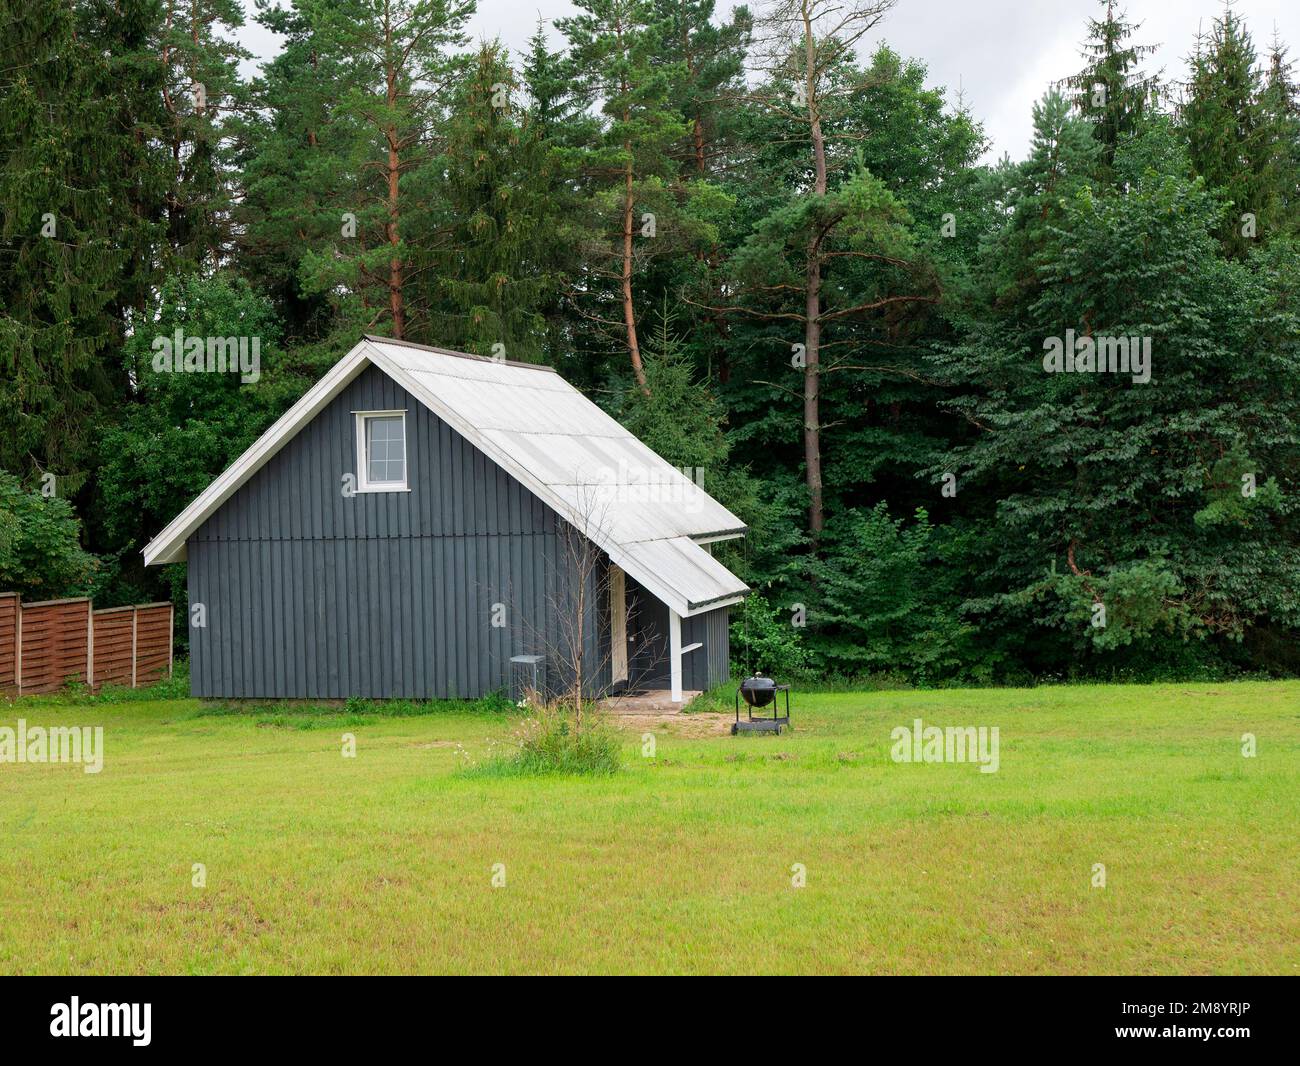 Bâtiment isolé au bord de la forêt, calme et calme. Paysage idyllique avec maison dans le style scandinave, foyer sélectif. Concept de vie privée, s Banque D'Images